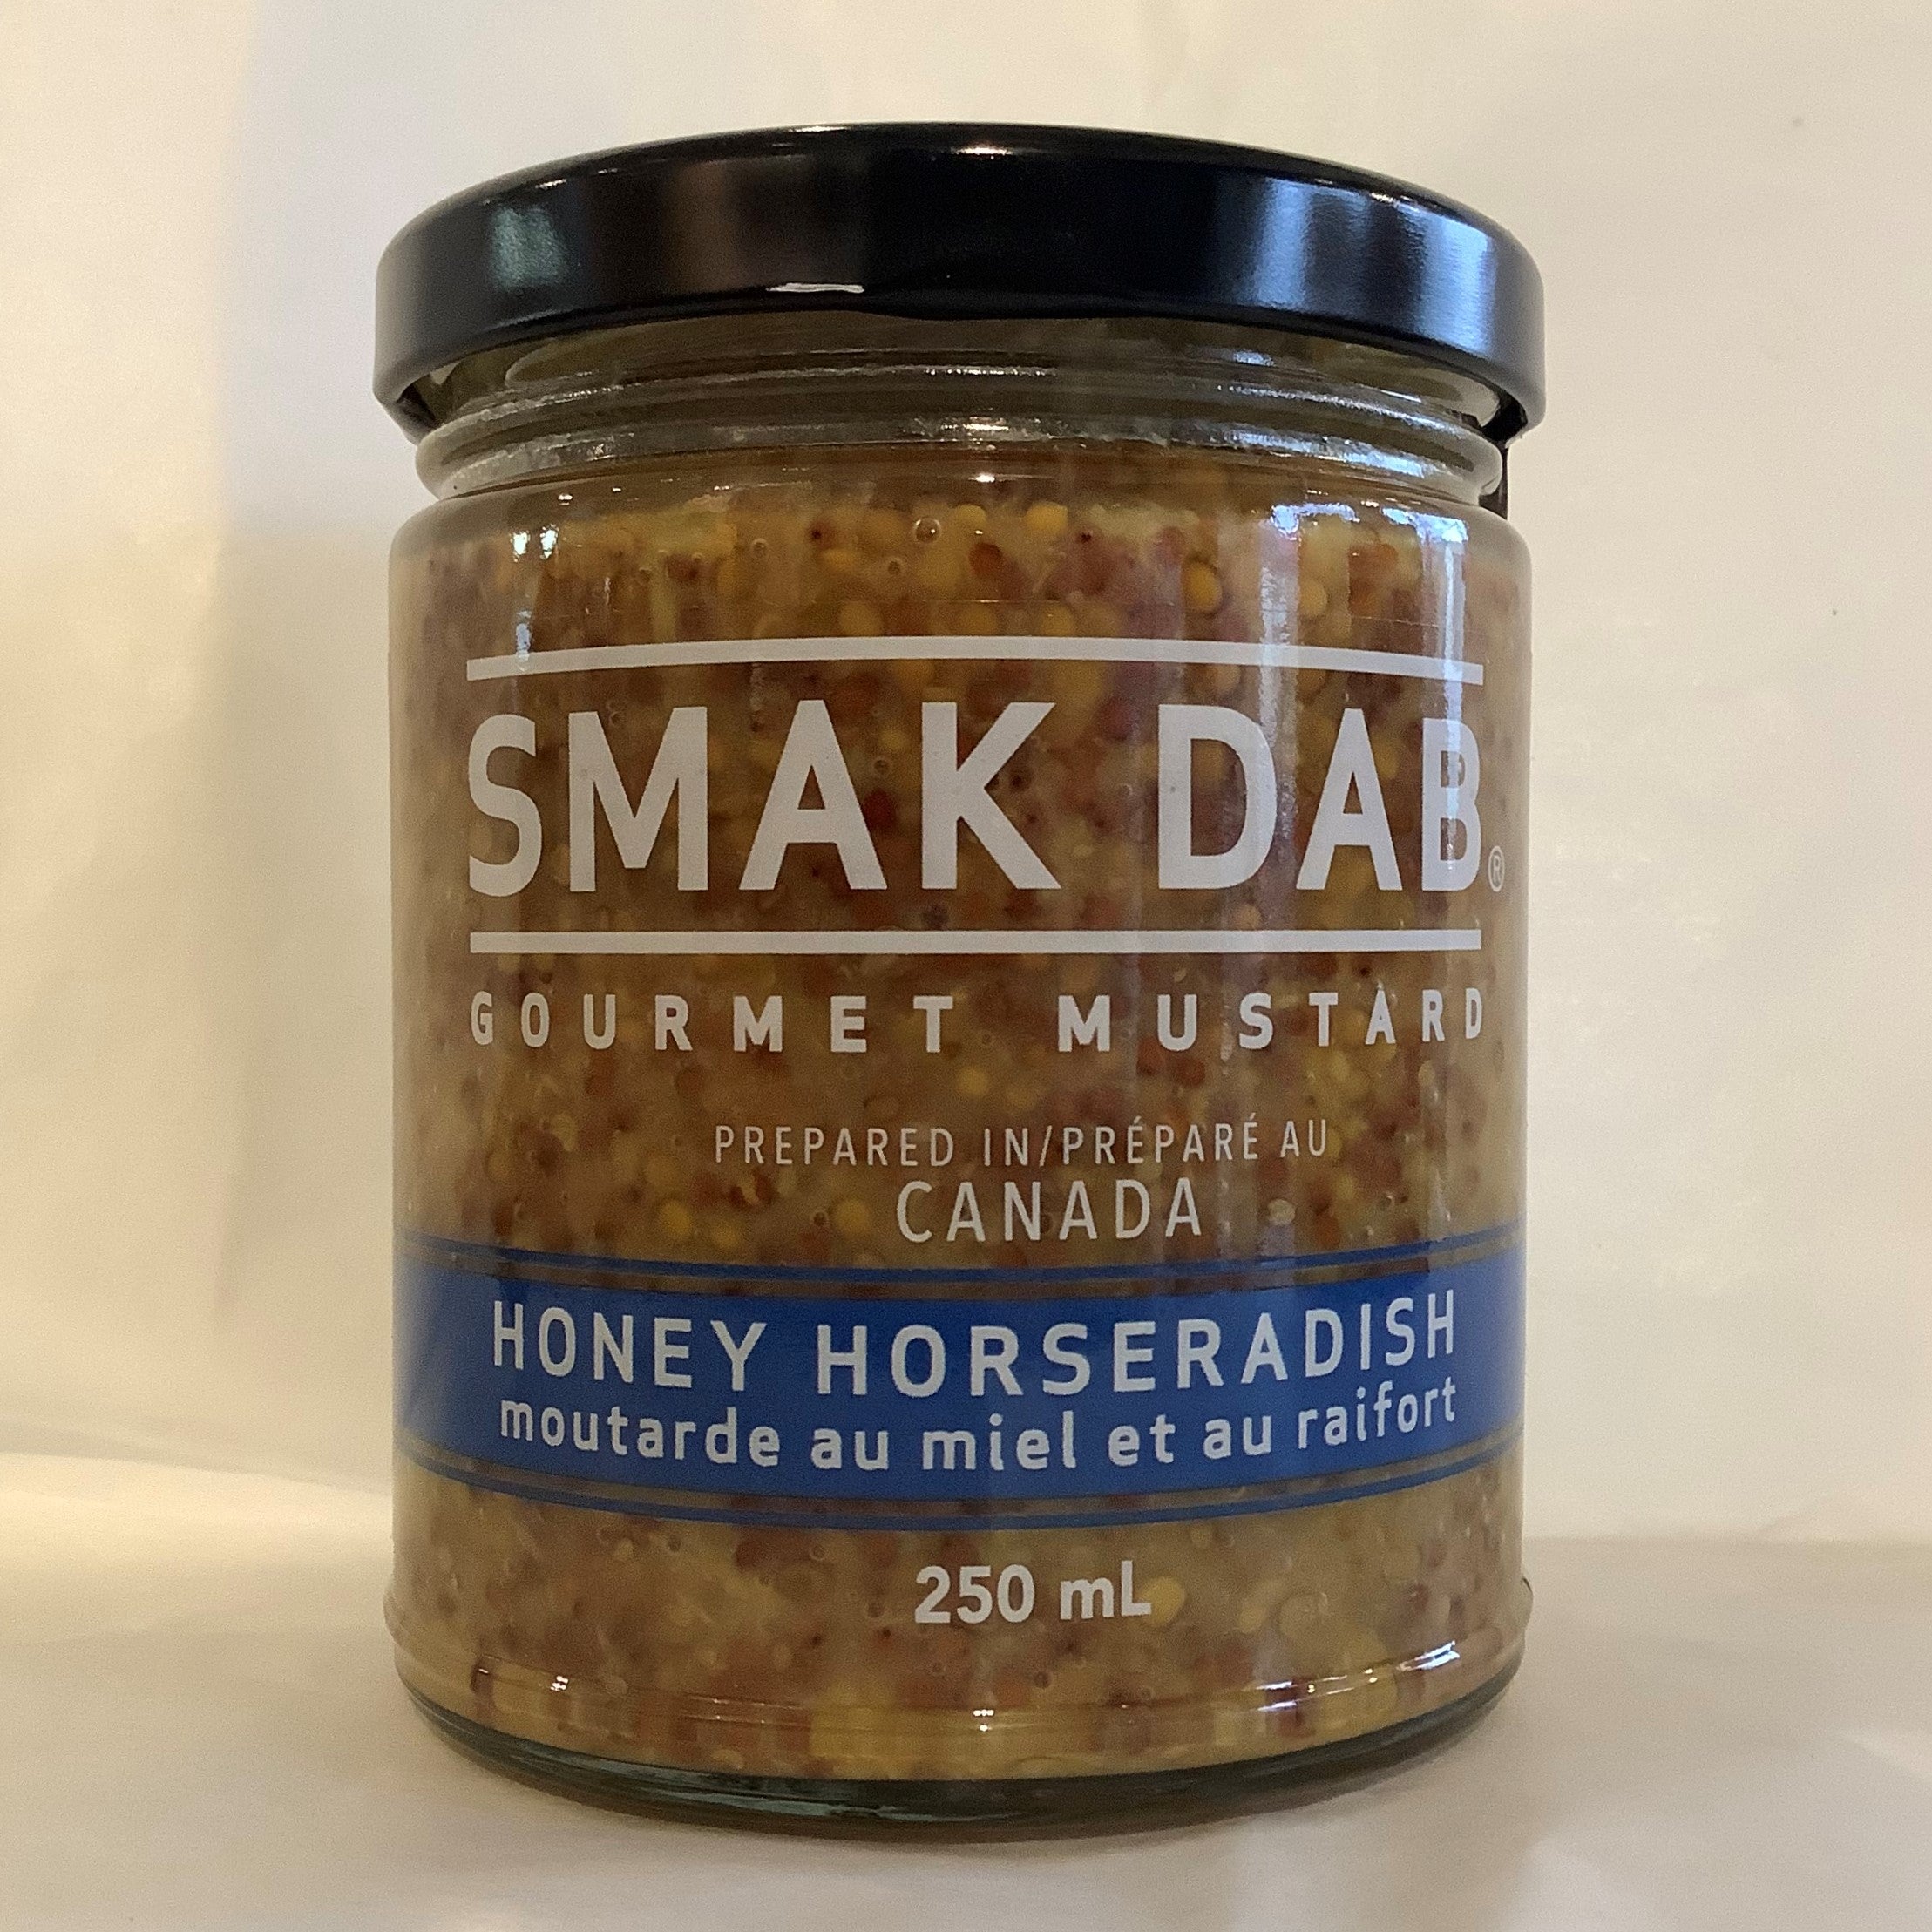 Smak Dab Gourmet Mustard Honey Horseradish